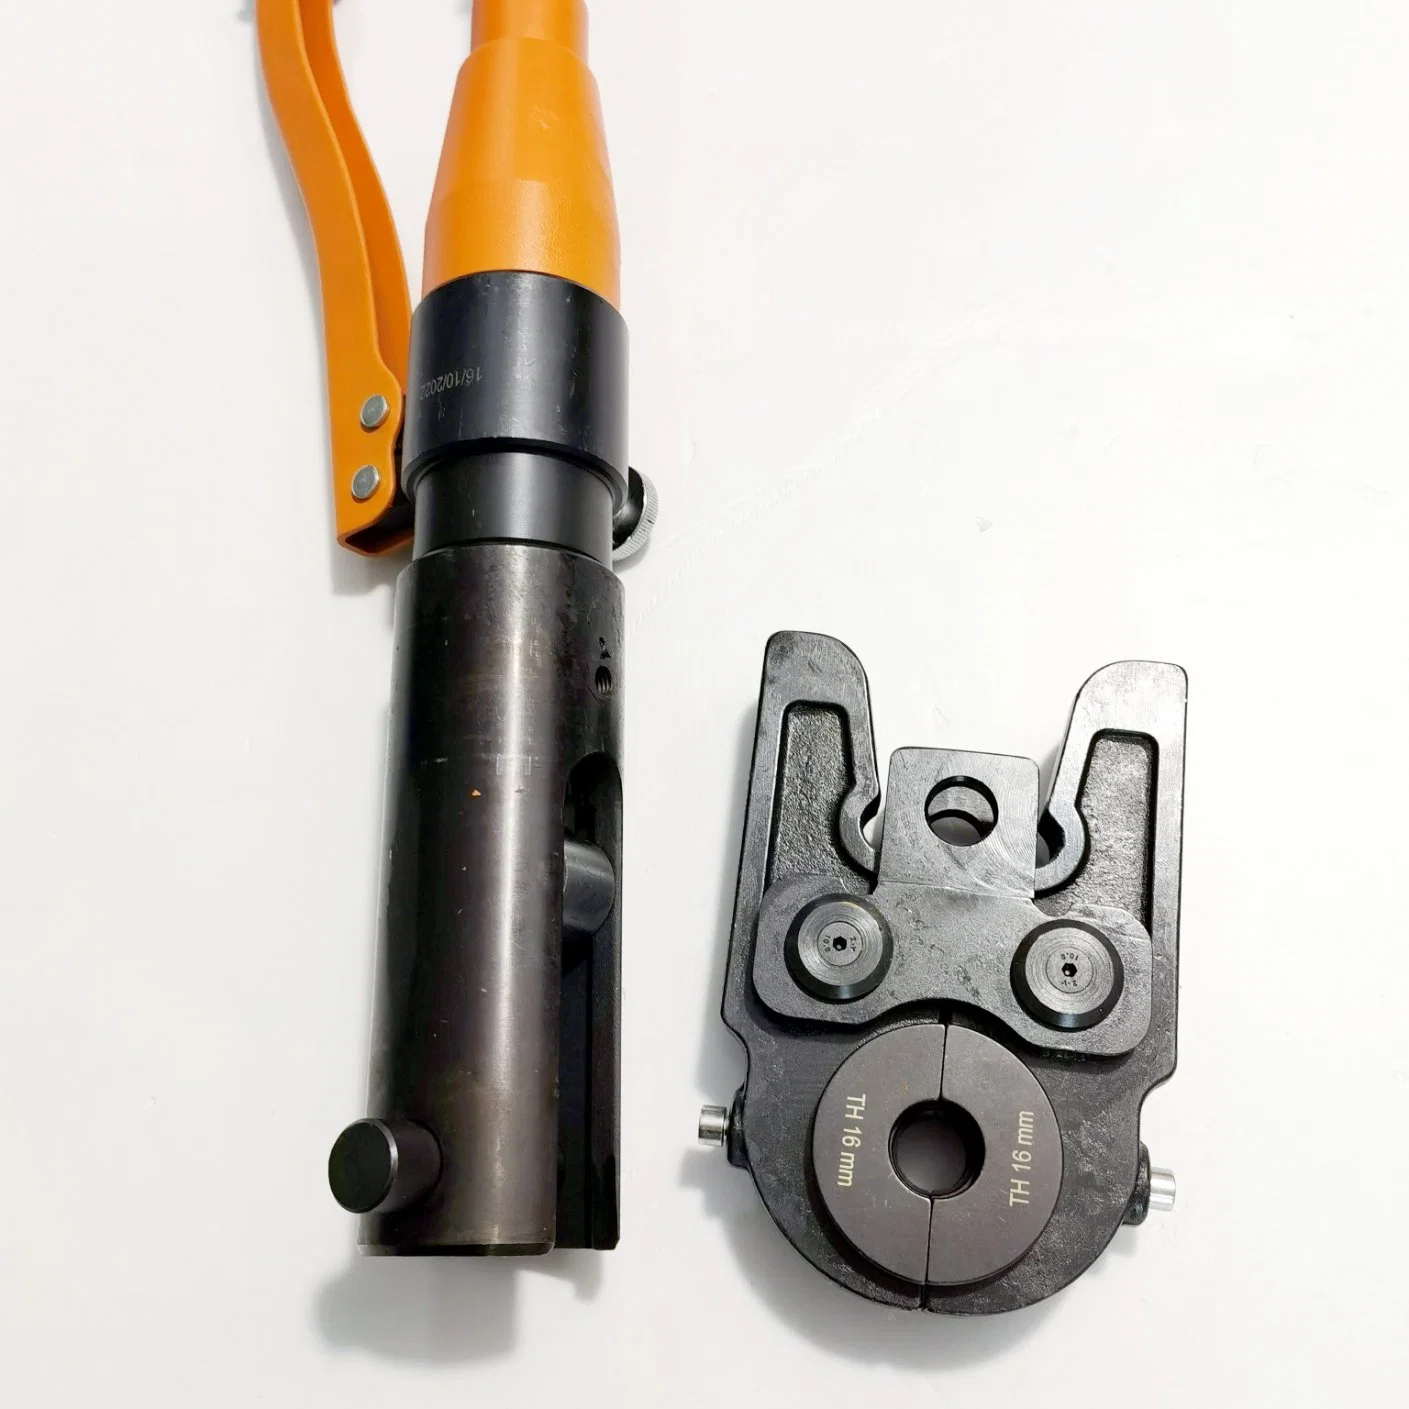 16-32 мм гидравлический трубопровод трубки обжимной инструмент для Pex-Al-Pex трубы